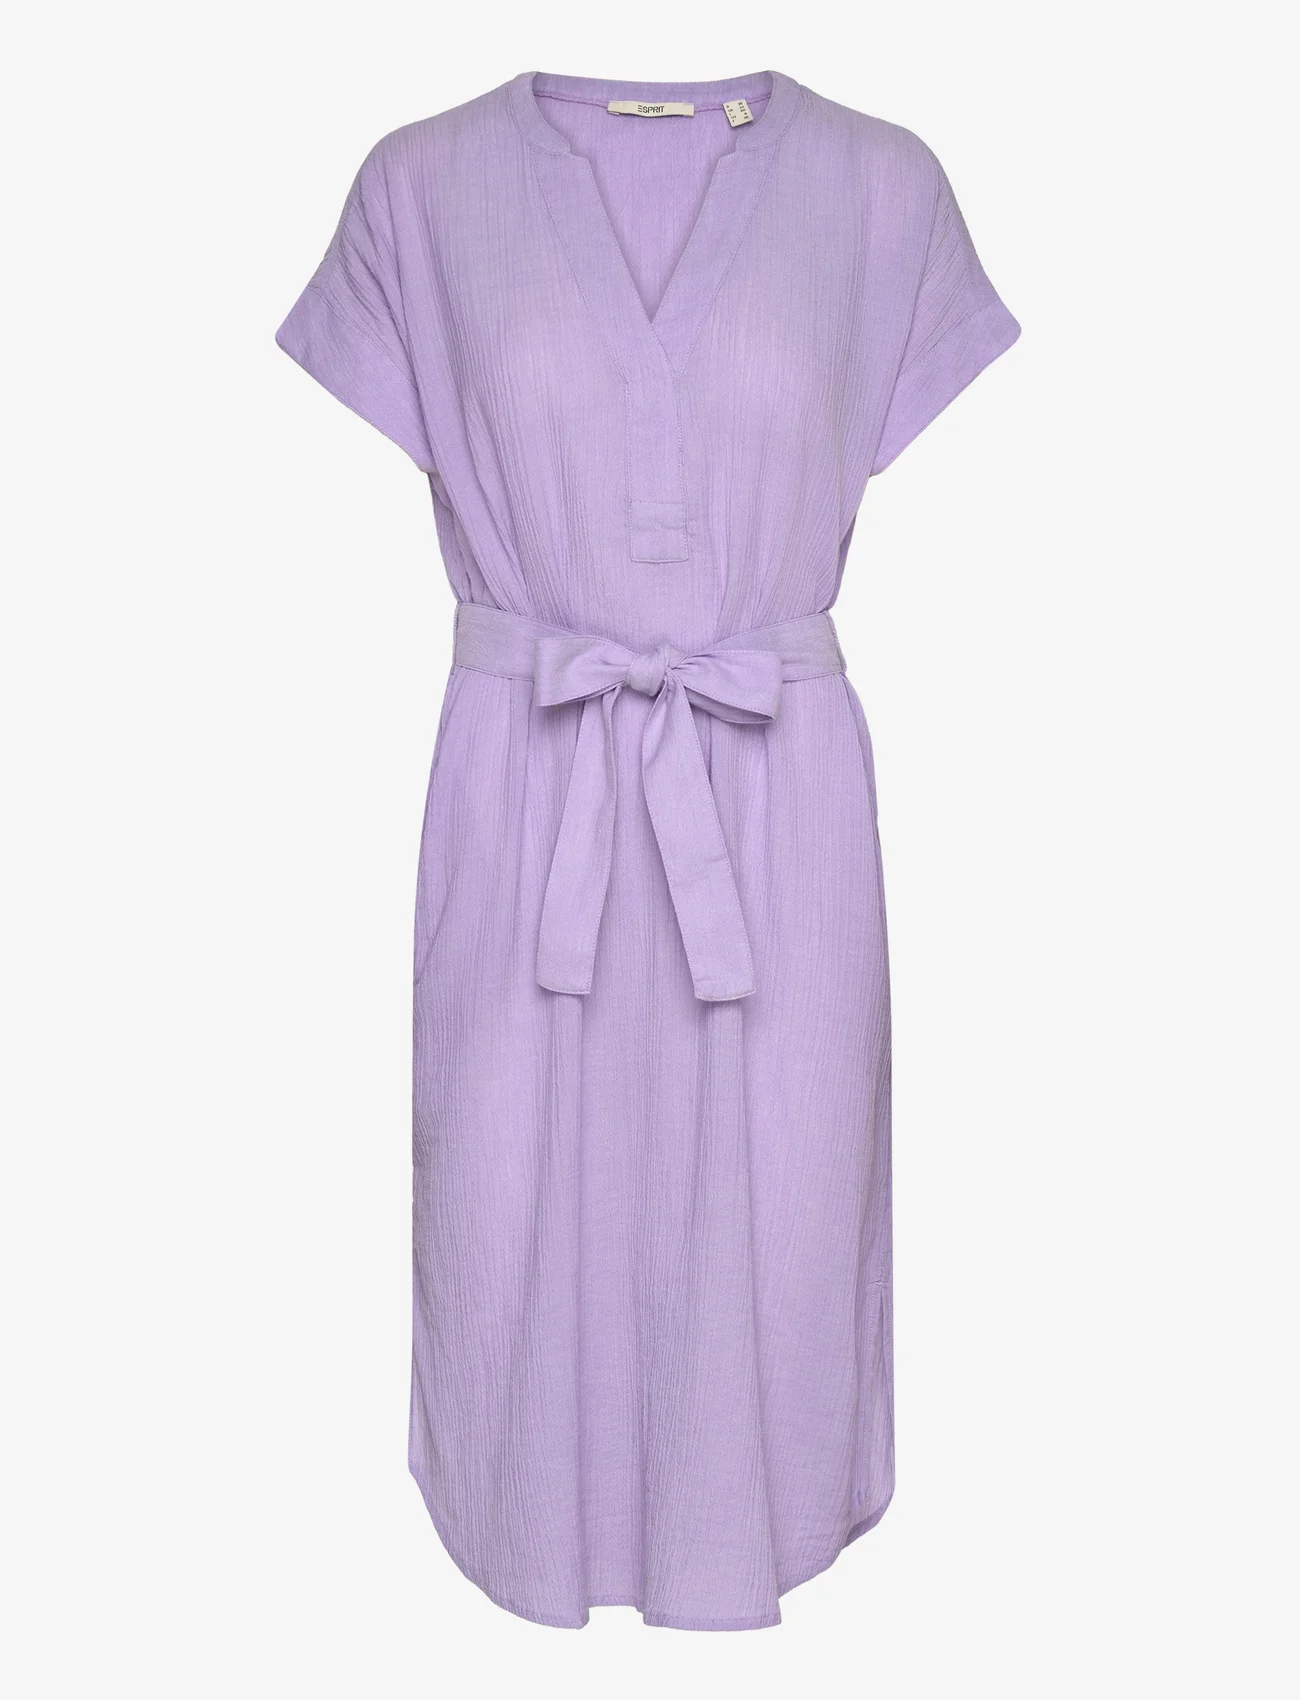 Esprit Casual - Crinkled midi dress with belt - kreklkleitas - purple - 0